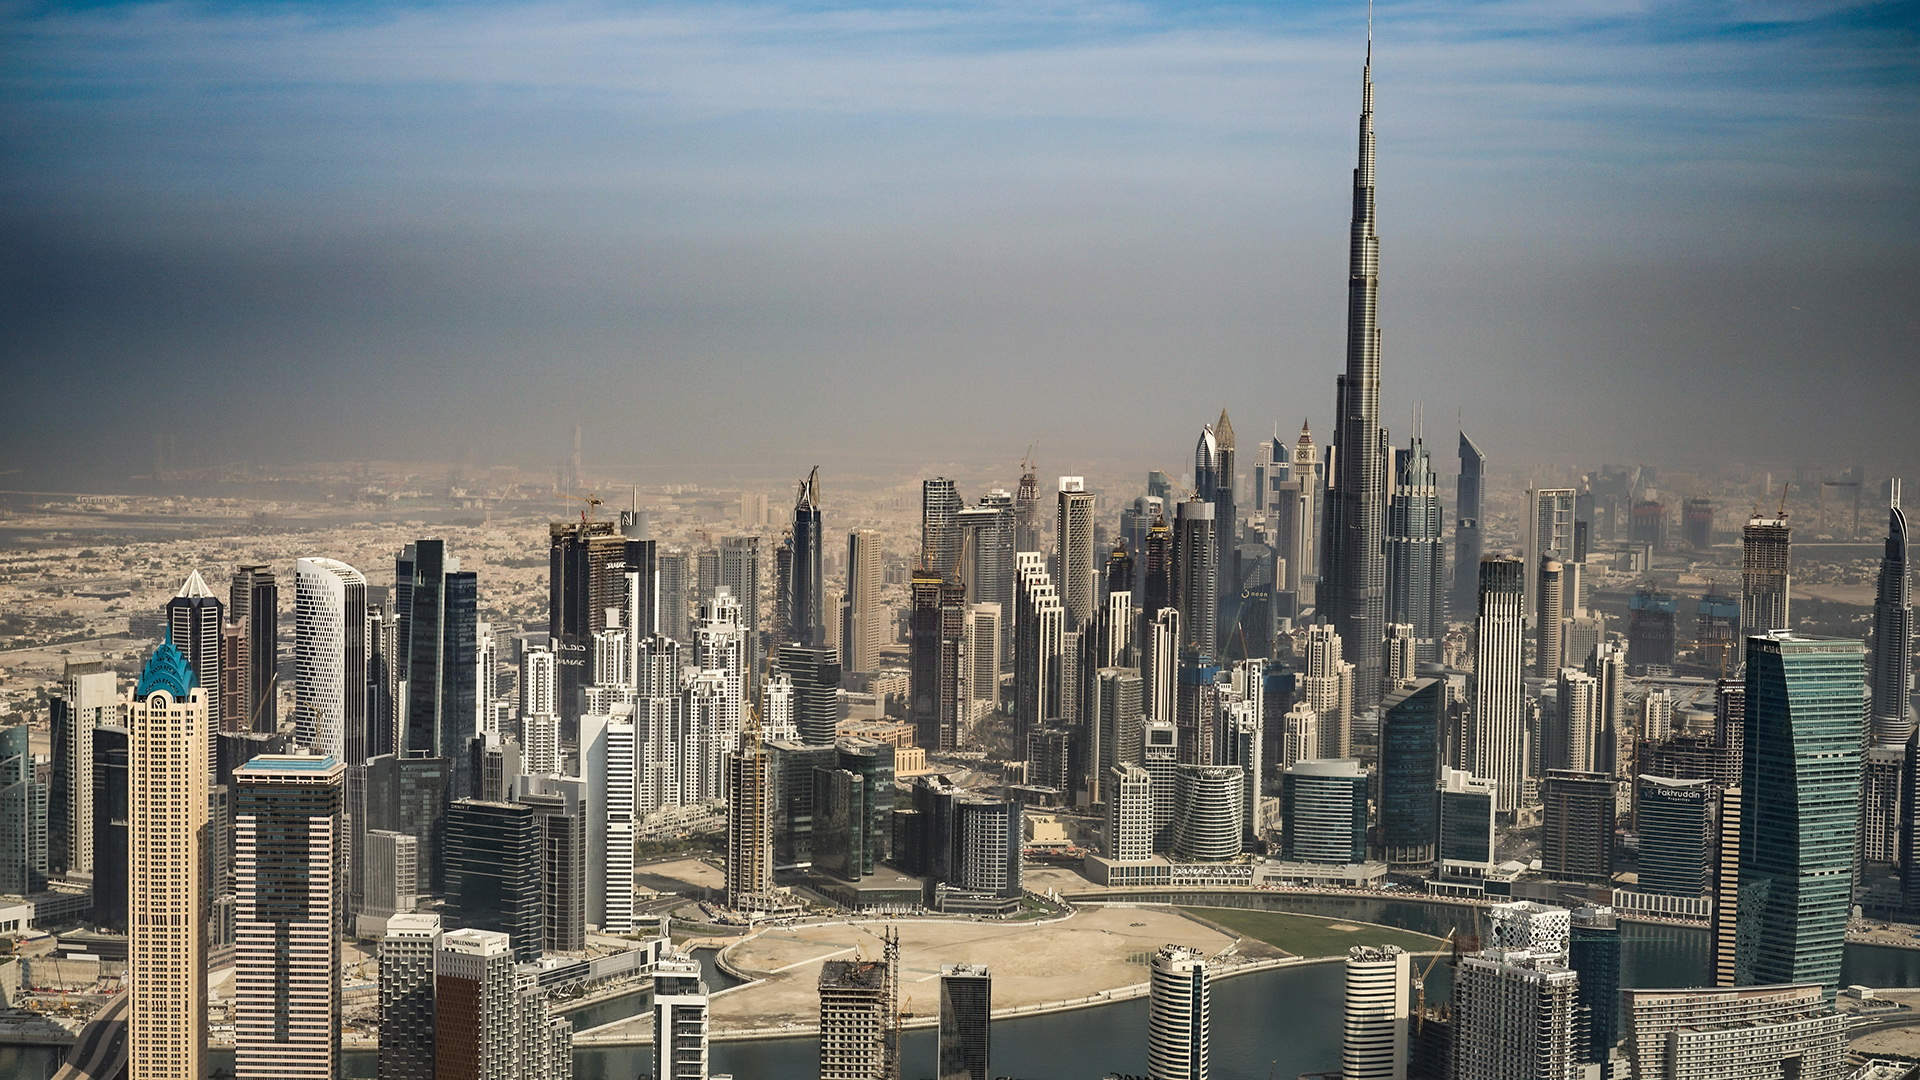 Skyline von Dubai | picture alliance / Zoonar